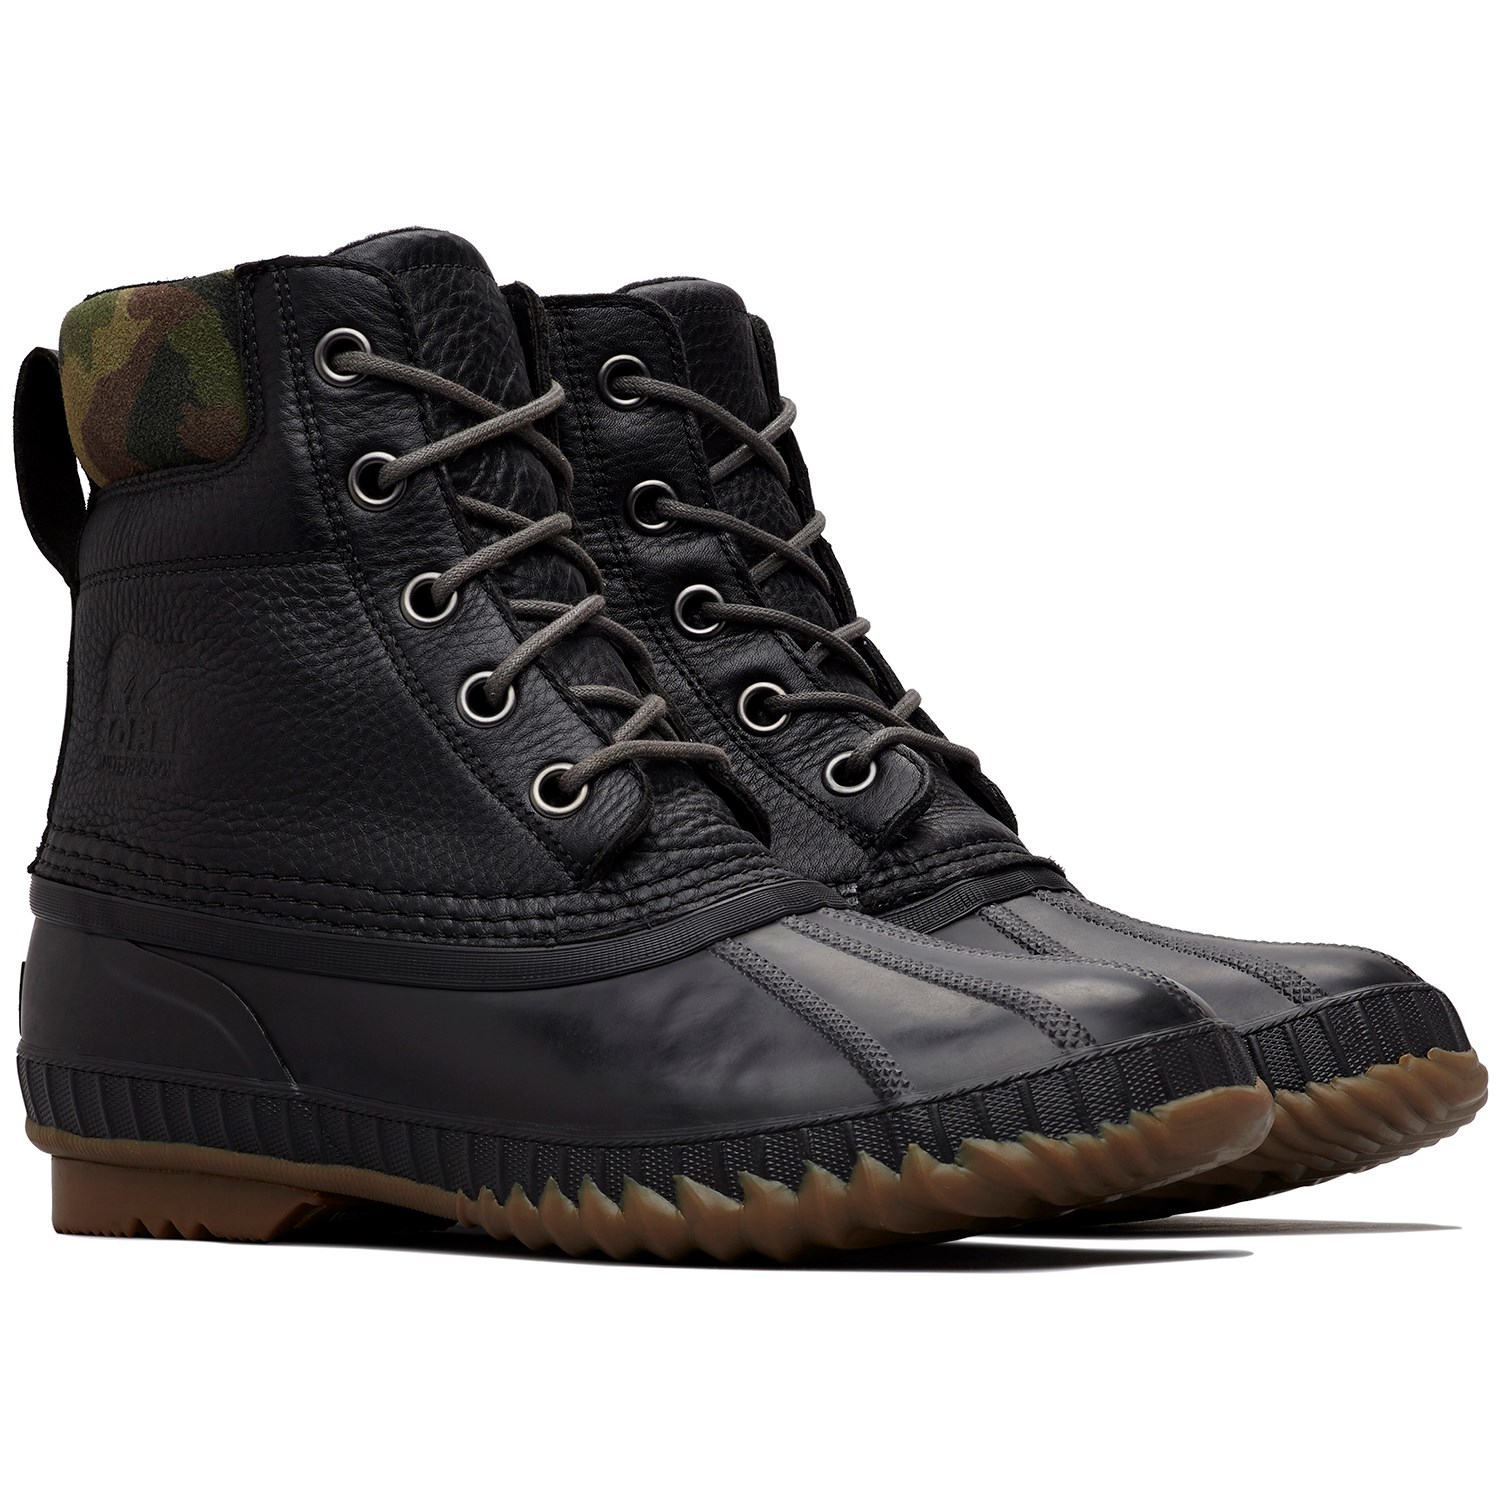 Sorel Cheyanne II Premium Camo Boots | evo